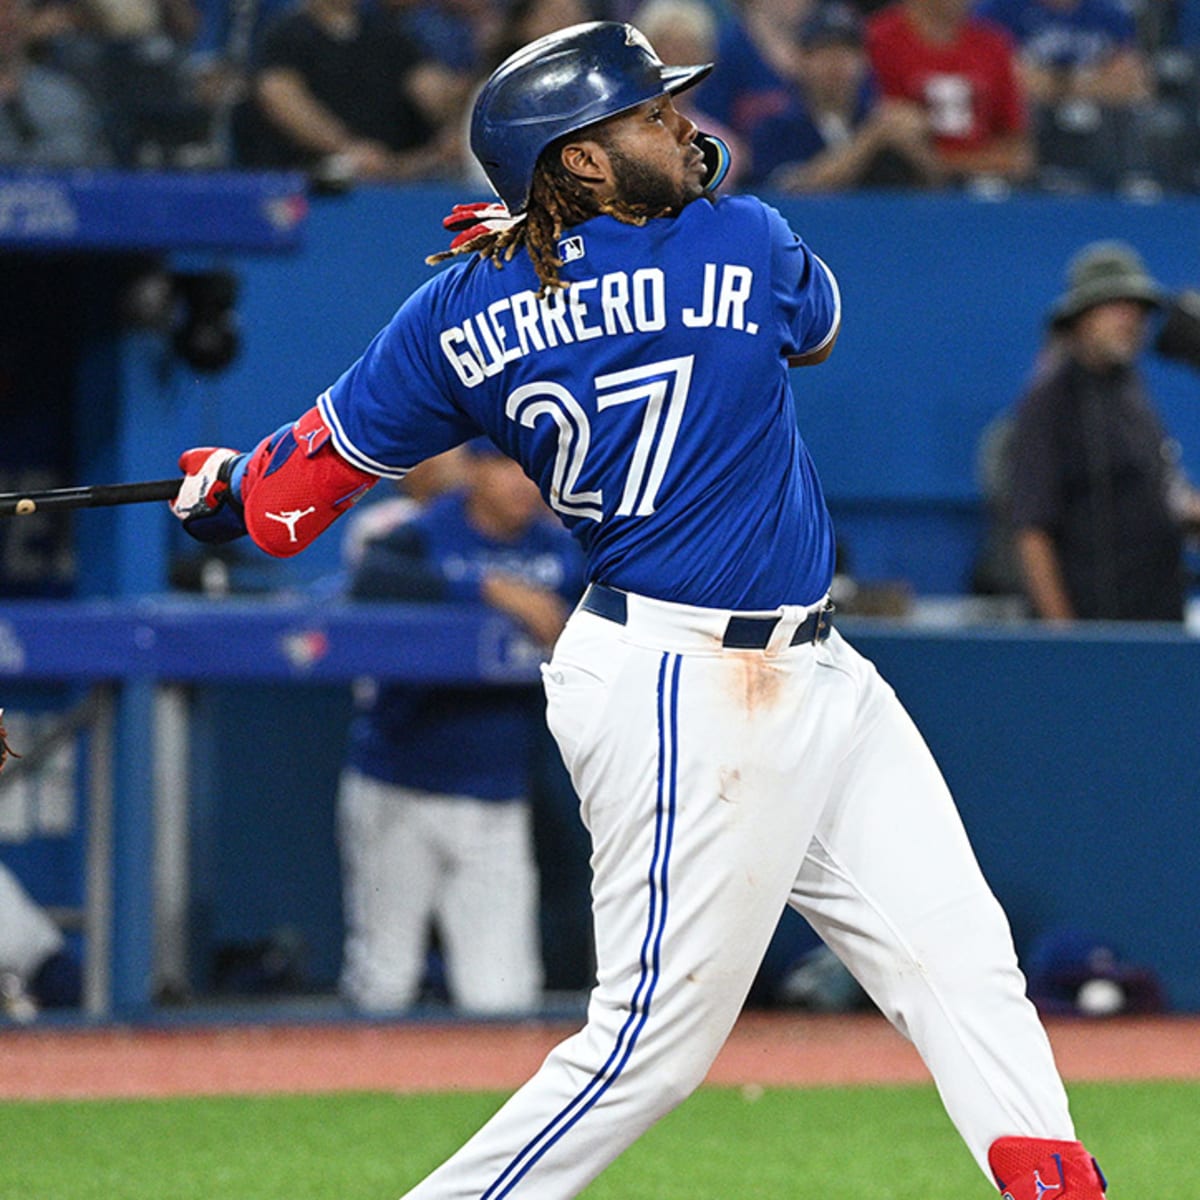 Toronto's Vladimir Guerrero Jr. wins MLB Home Run Derby